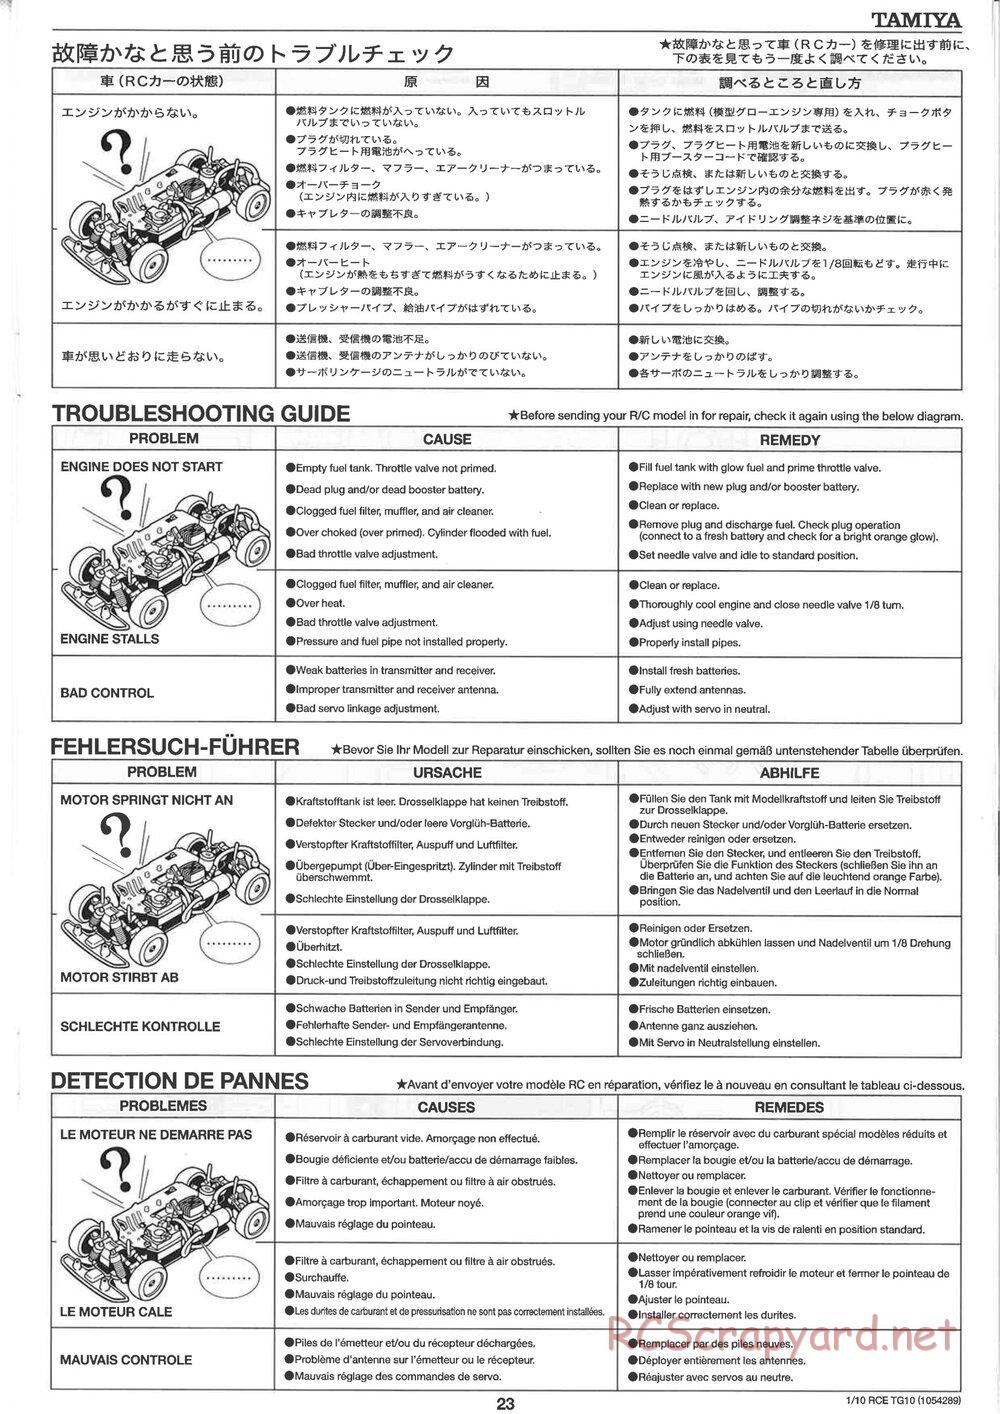 Tamiya - TG10 Mk.1 Chassis - Manual - Page 23